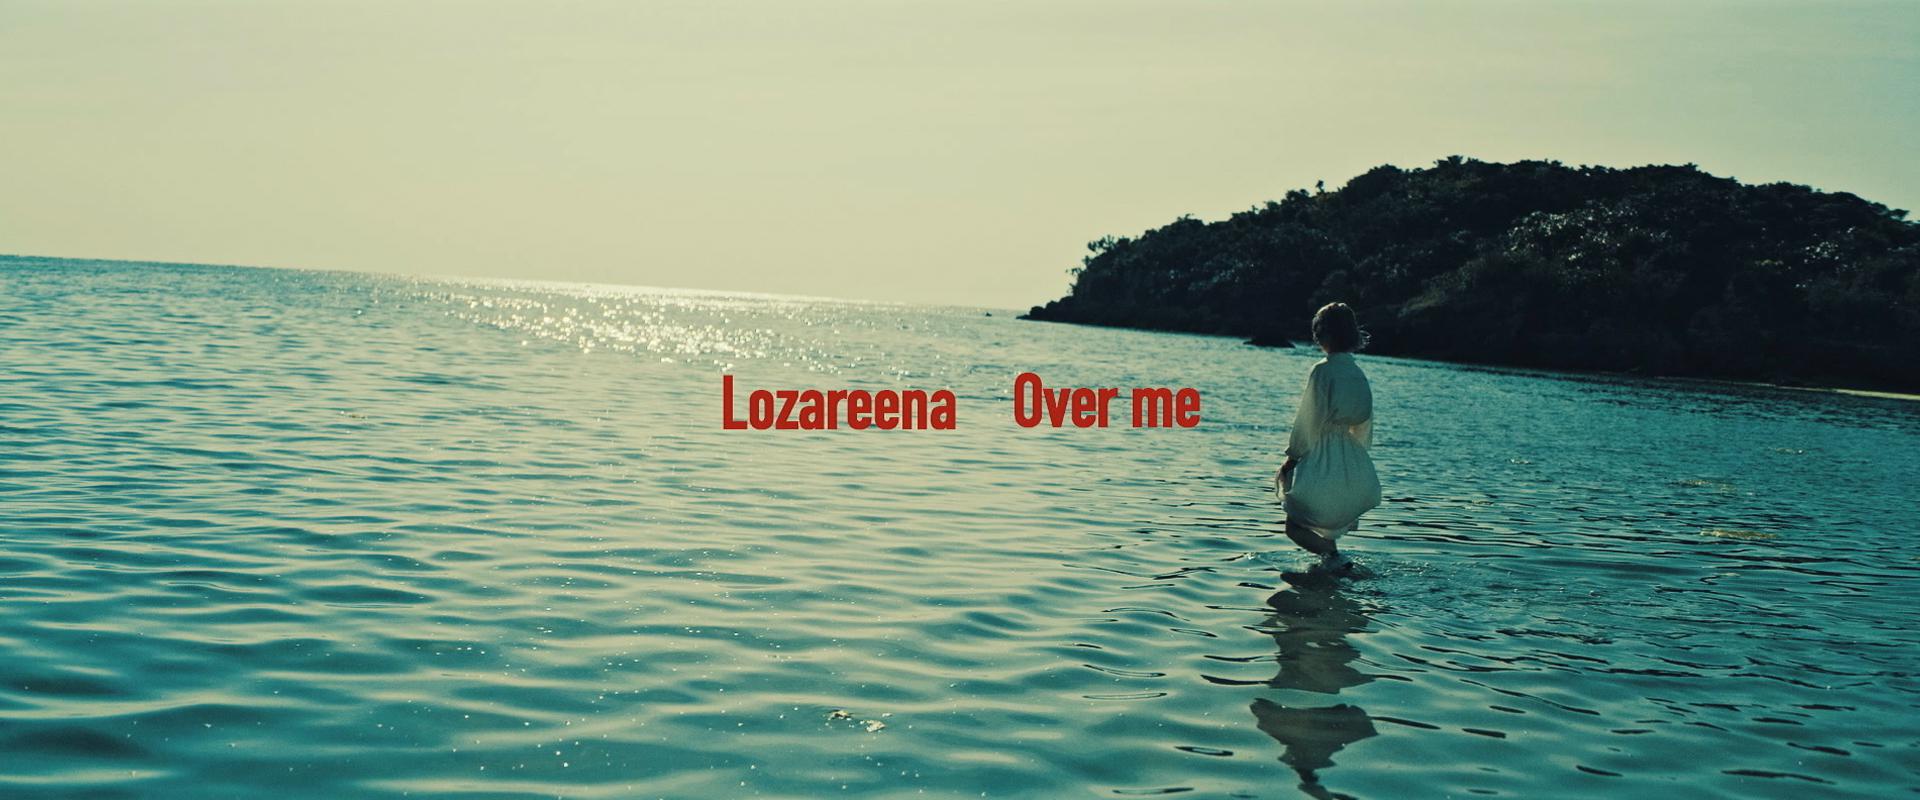 ロザリーナ - Over me